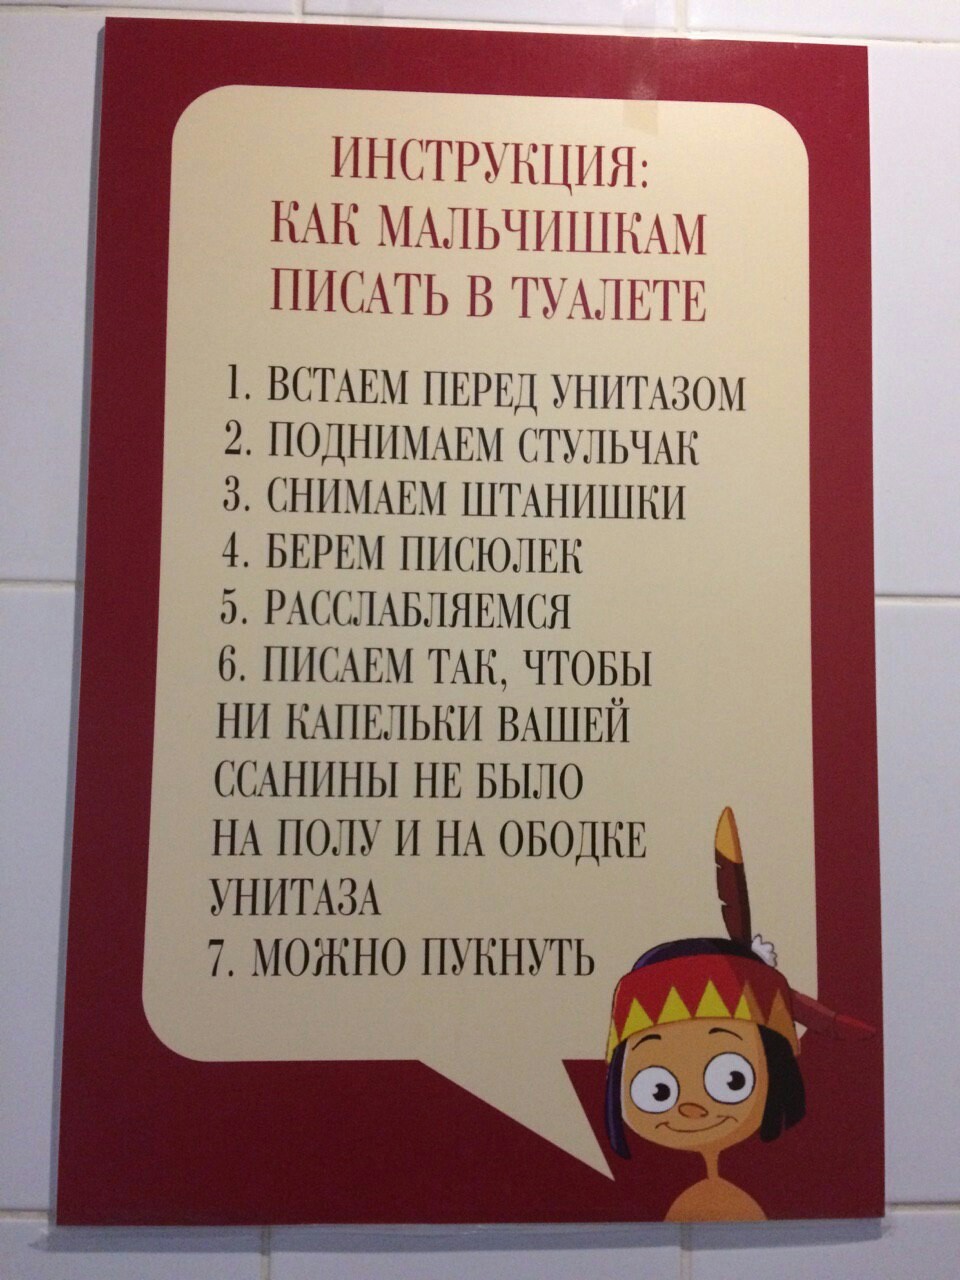 Инструкция для туалета